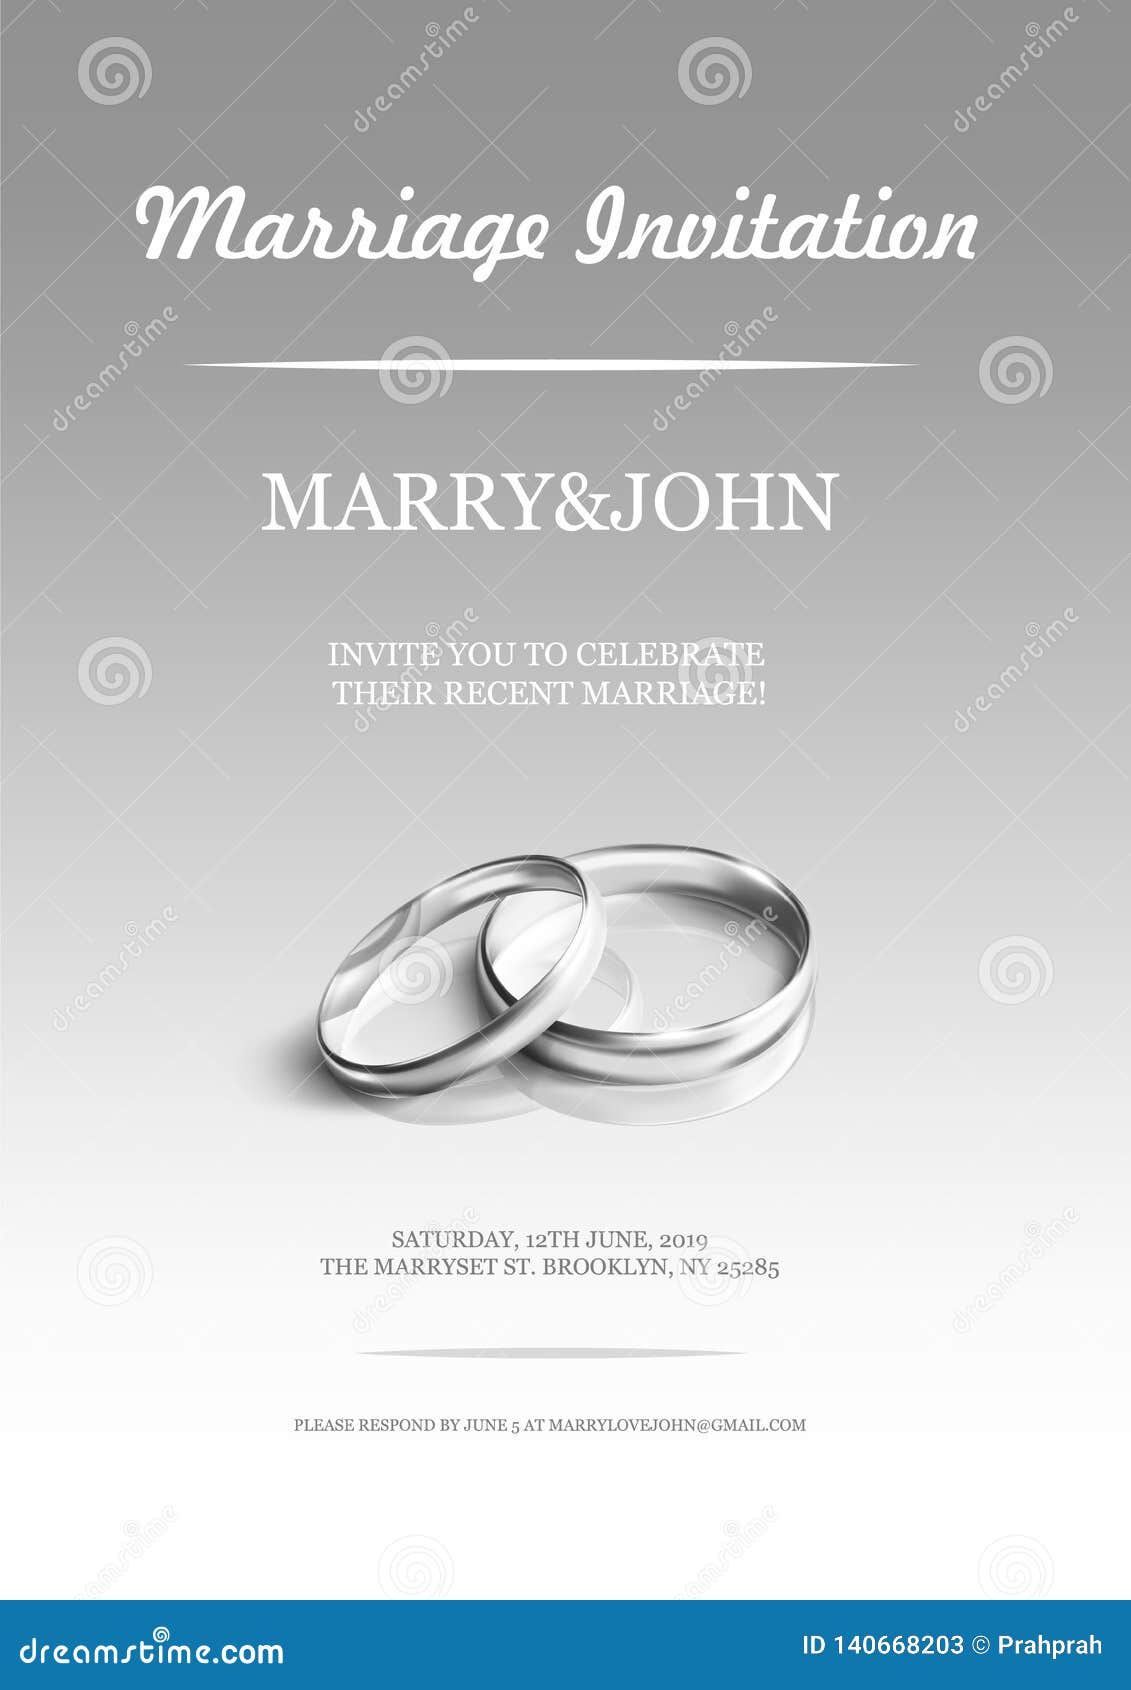 Wedding Invitation Background png download - 1098*603 - Free Transparent  Wedding Invitation png Download. - CleanPNG / KissPNG